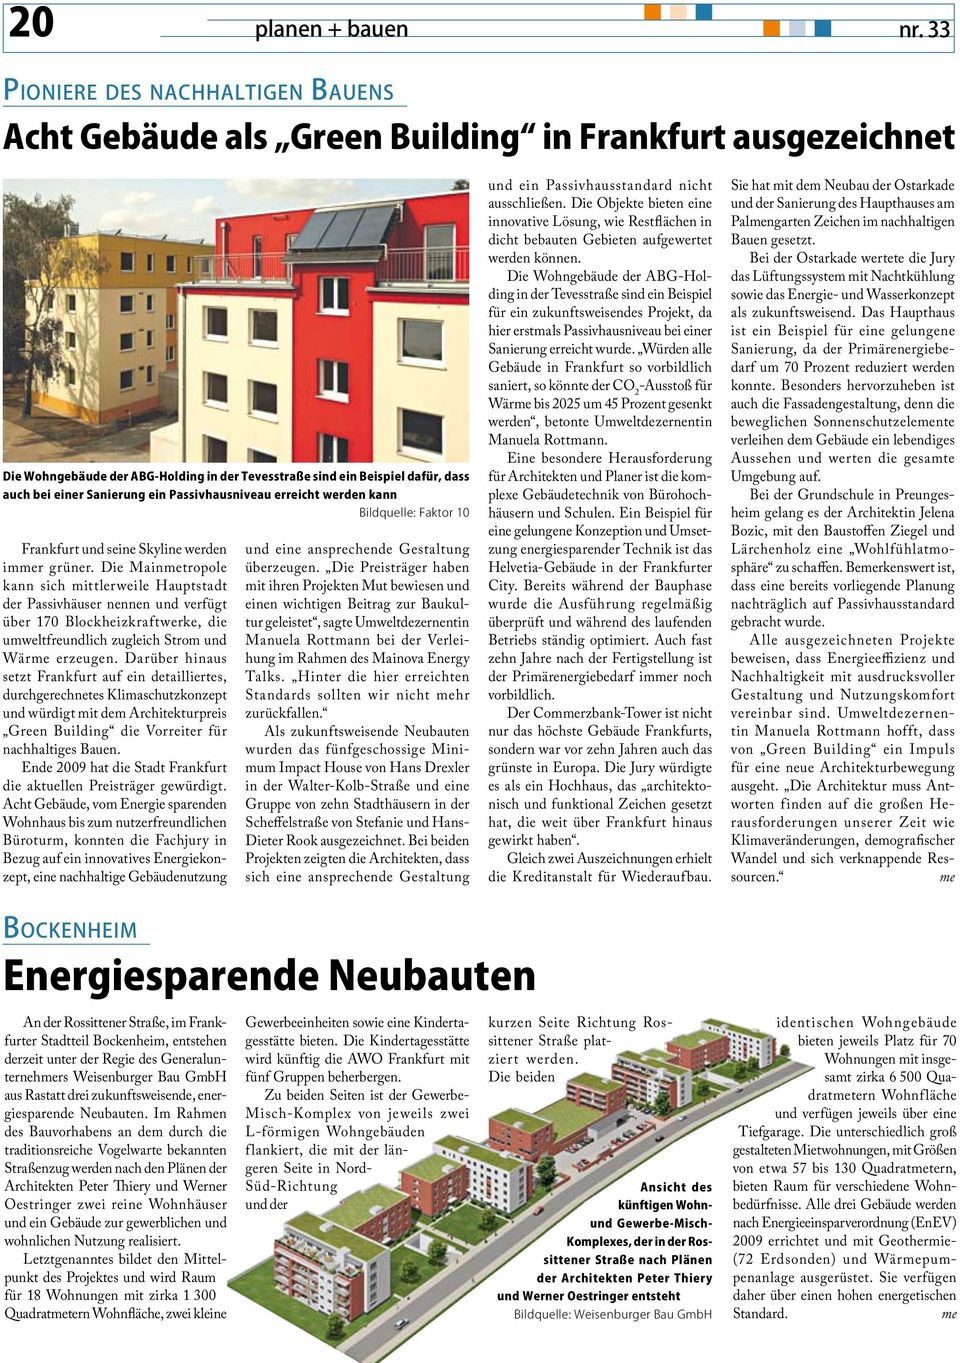 Sanierung ein Passivhausniveau erreicht werden kann Bildquelle: Faktor 10 Frankfurt und seine Skyline werden immer grüner.